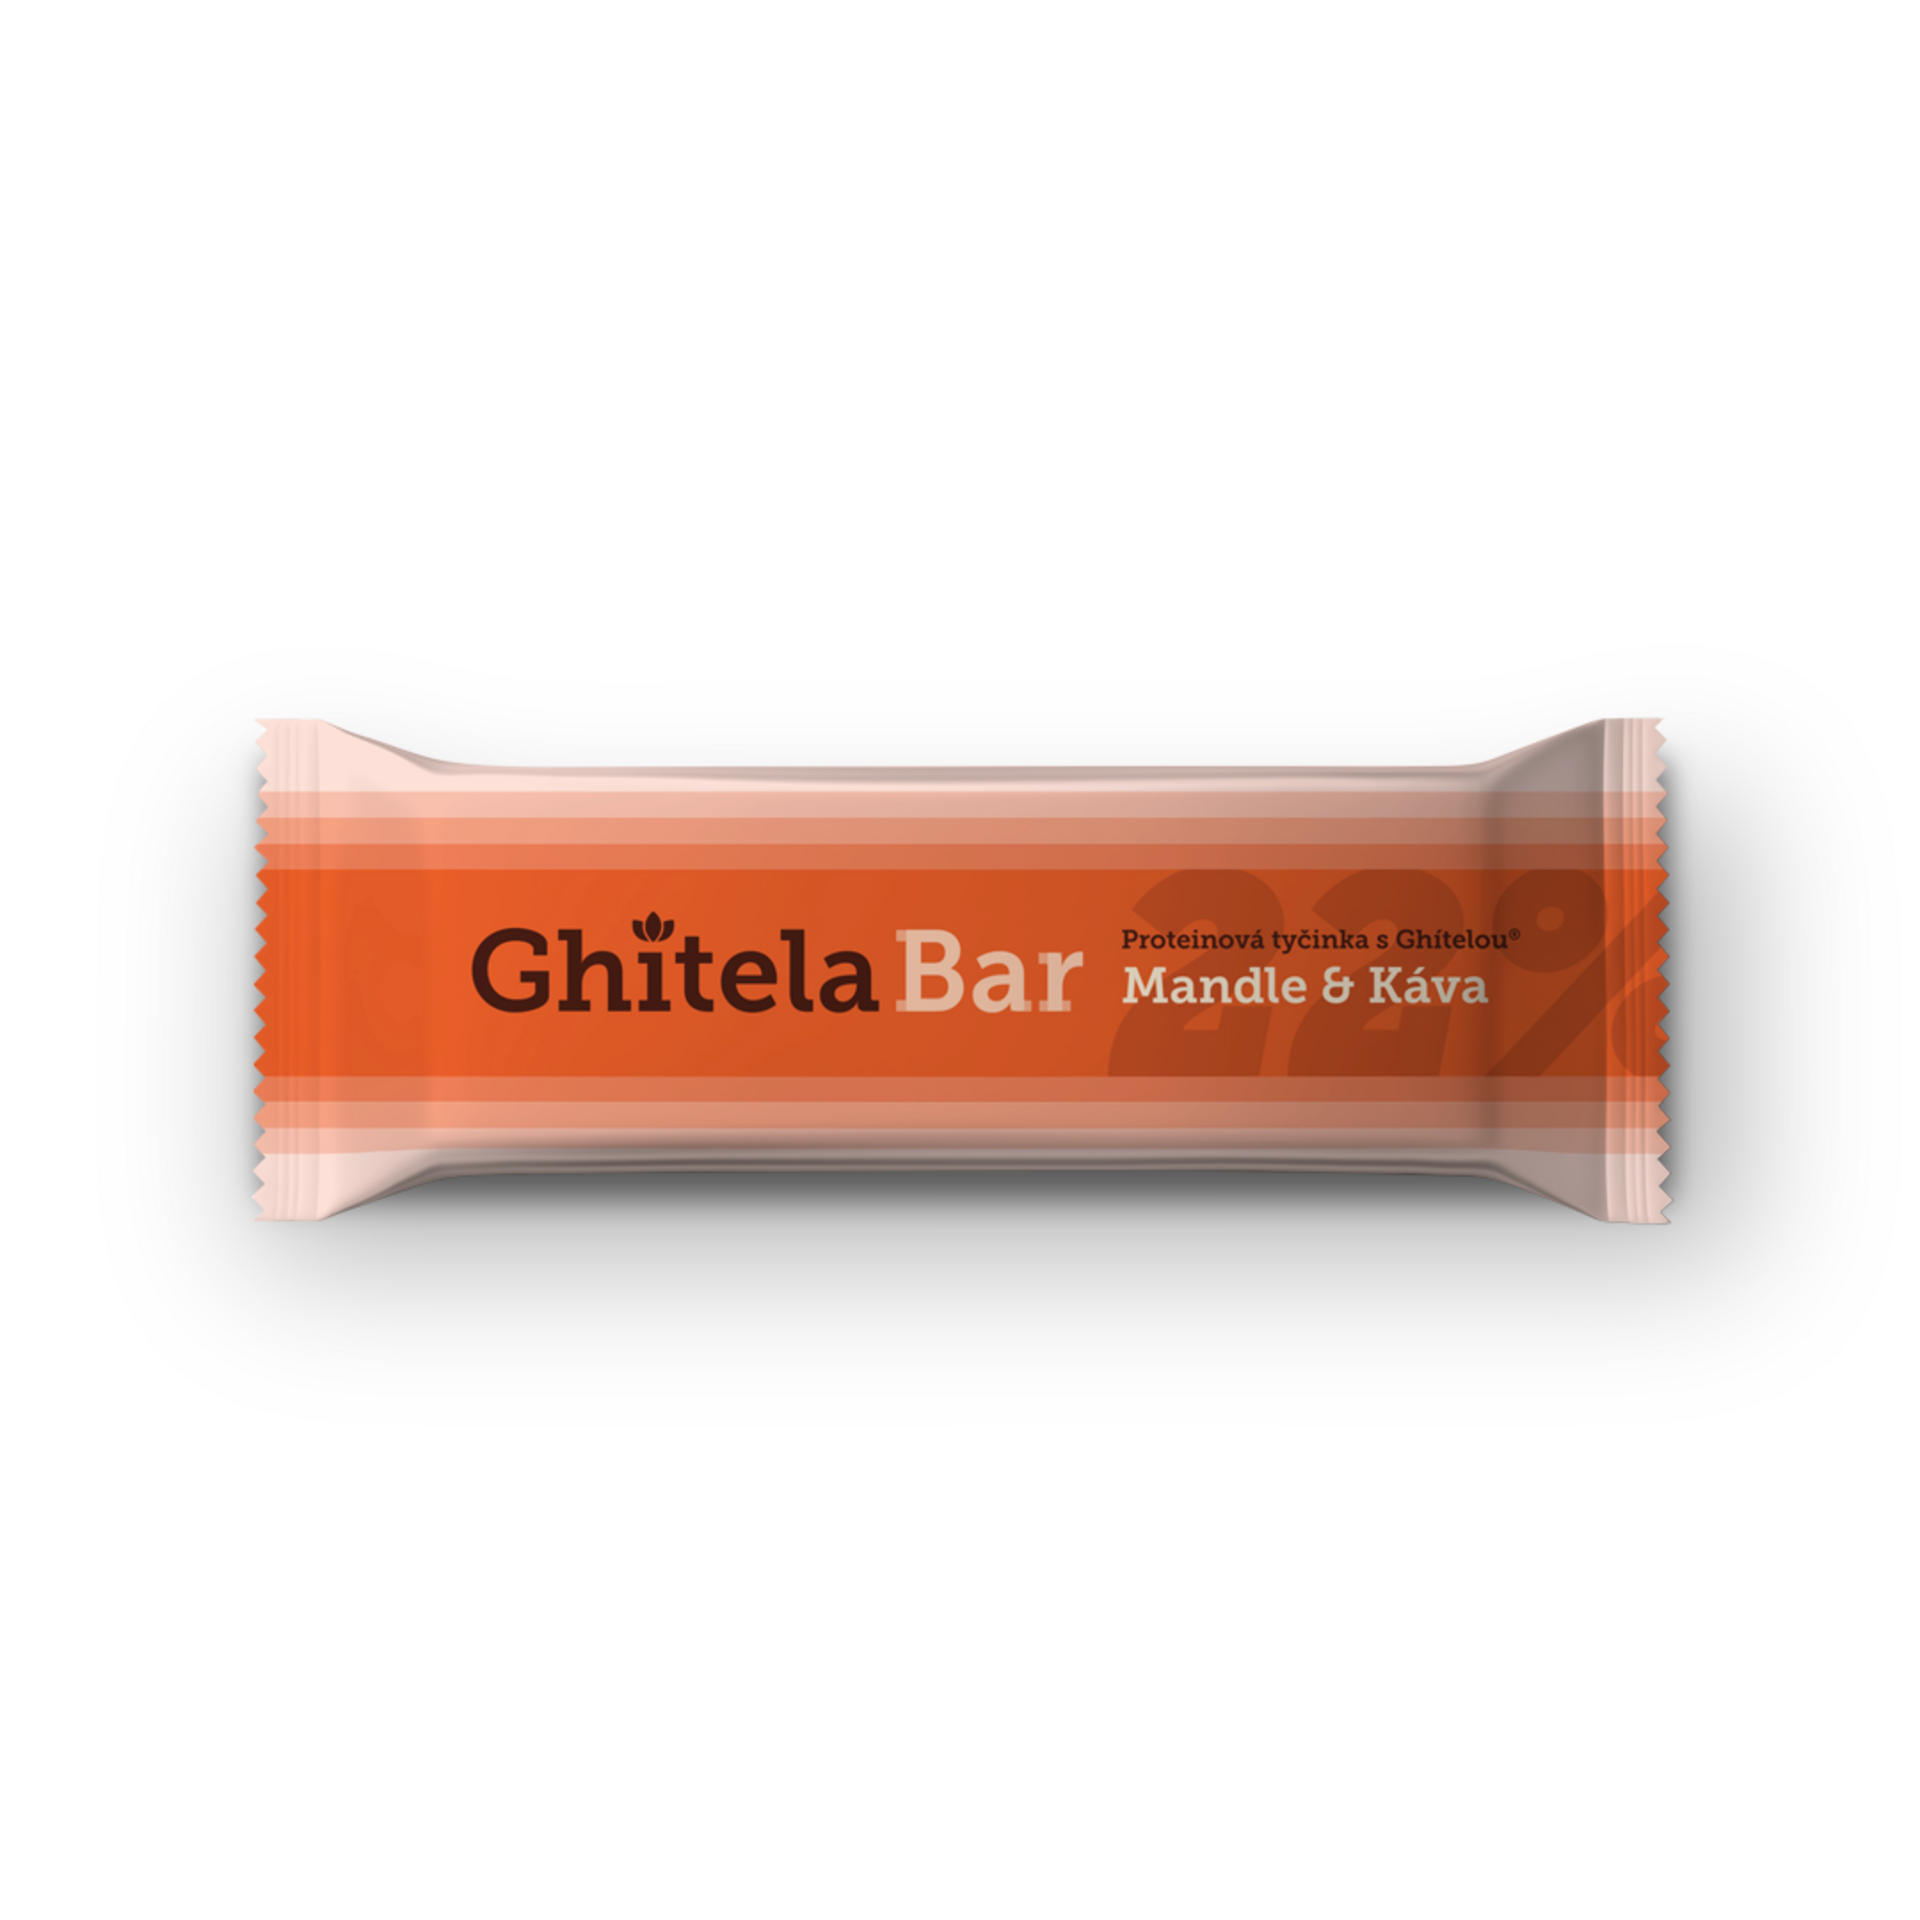 Ghitela-Bar-35g-mandle-kava-6283fda03ca3b